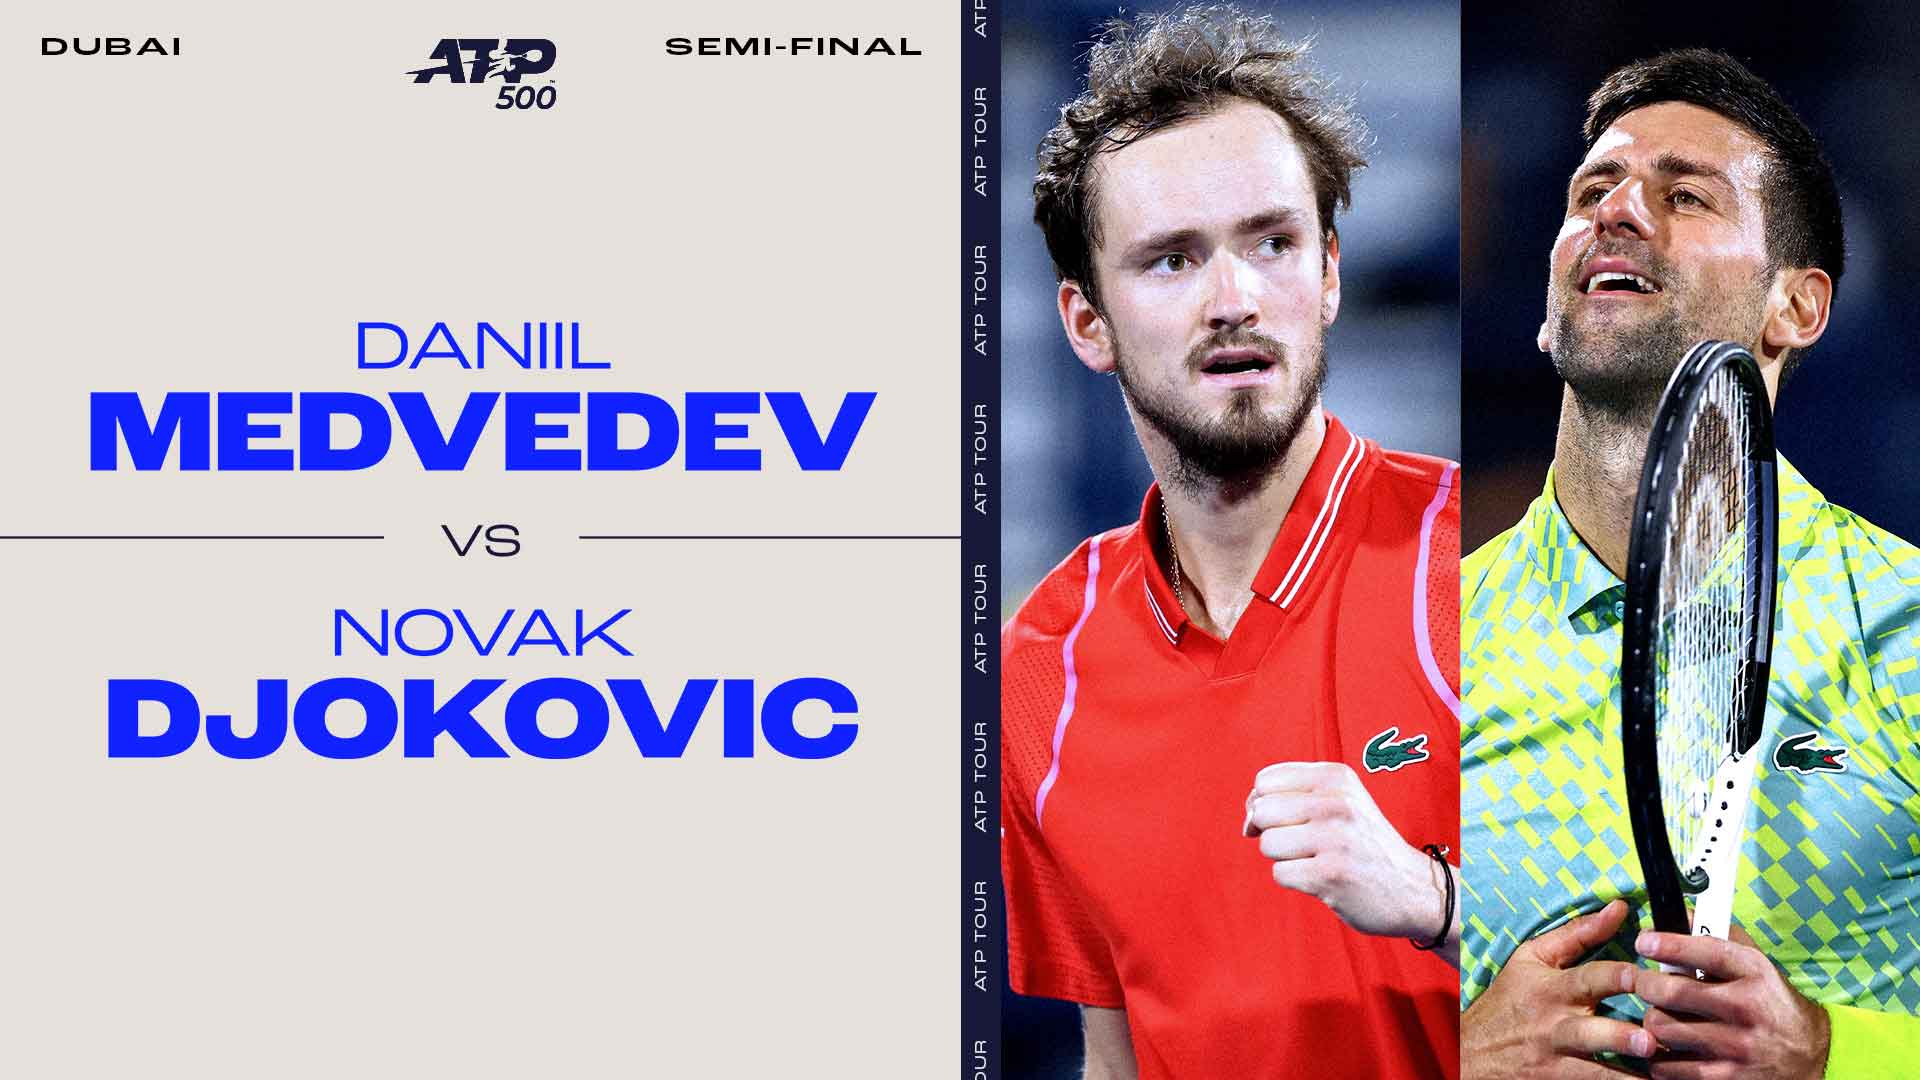 Flawless Djokovic sets up Medvedev blockbuster in Dubai